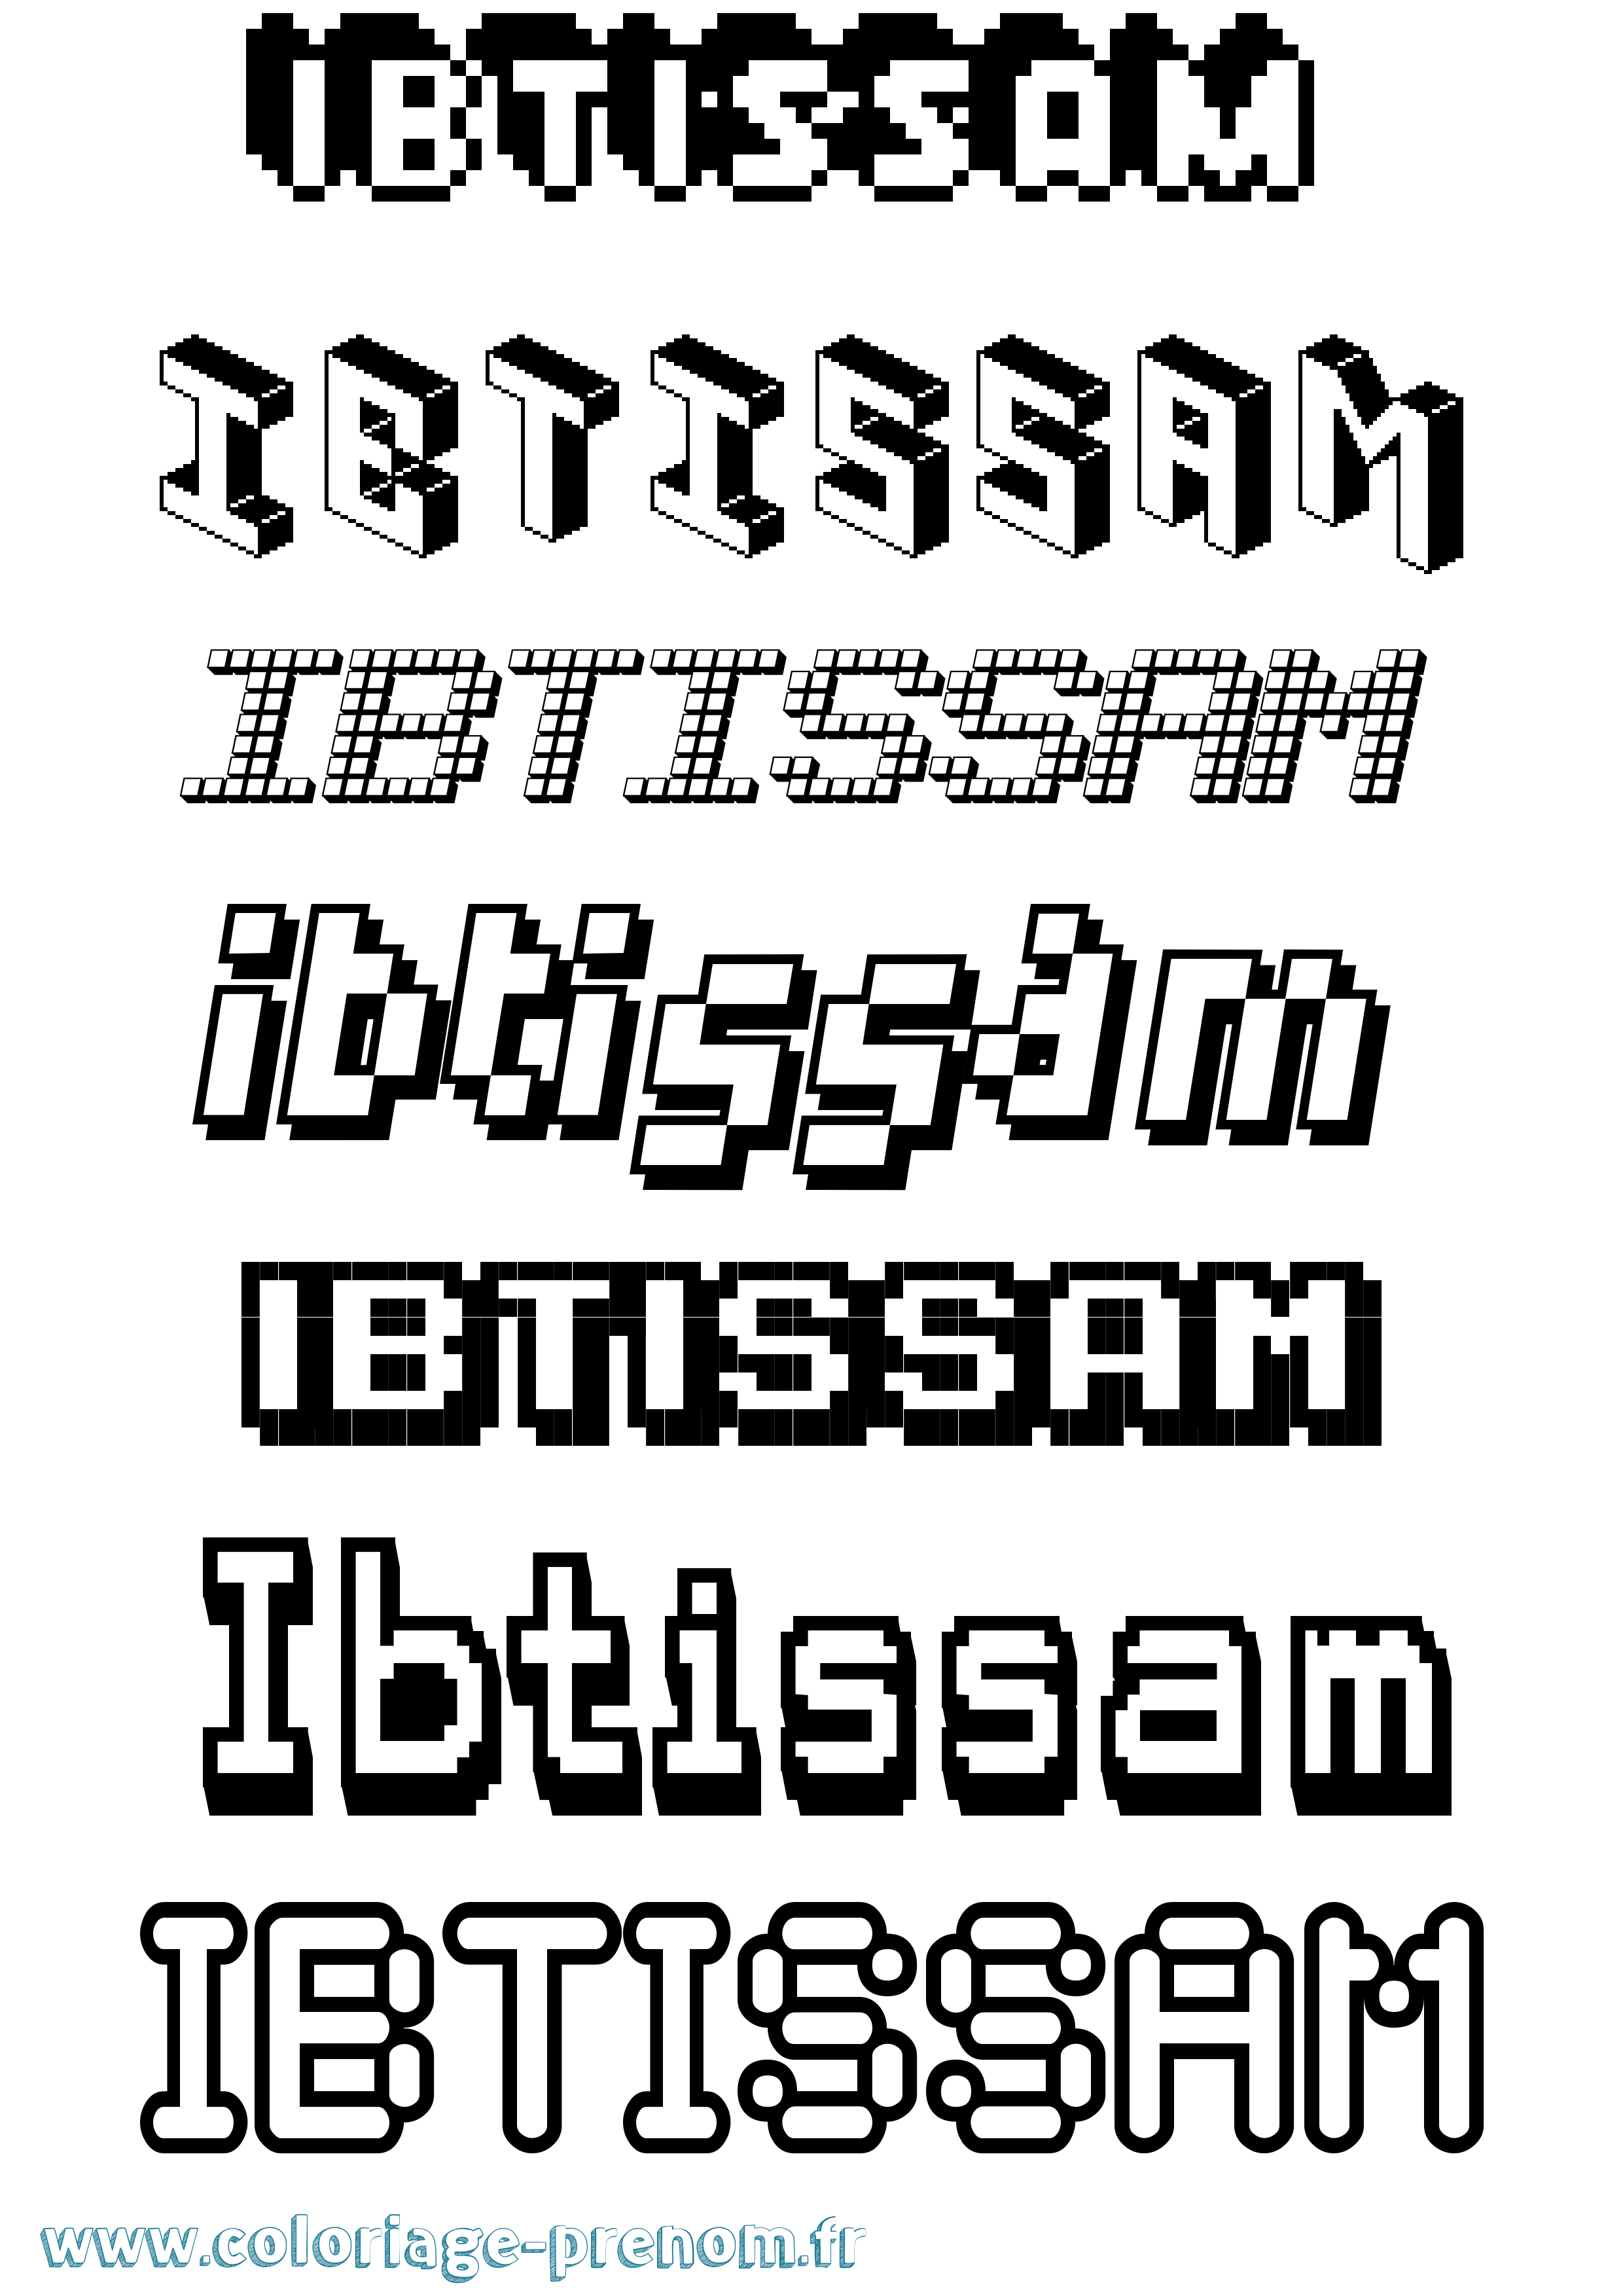 Coloriage prénom Ibtissam Pixel